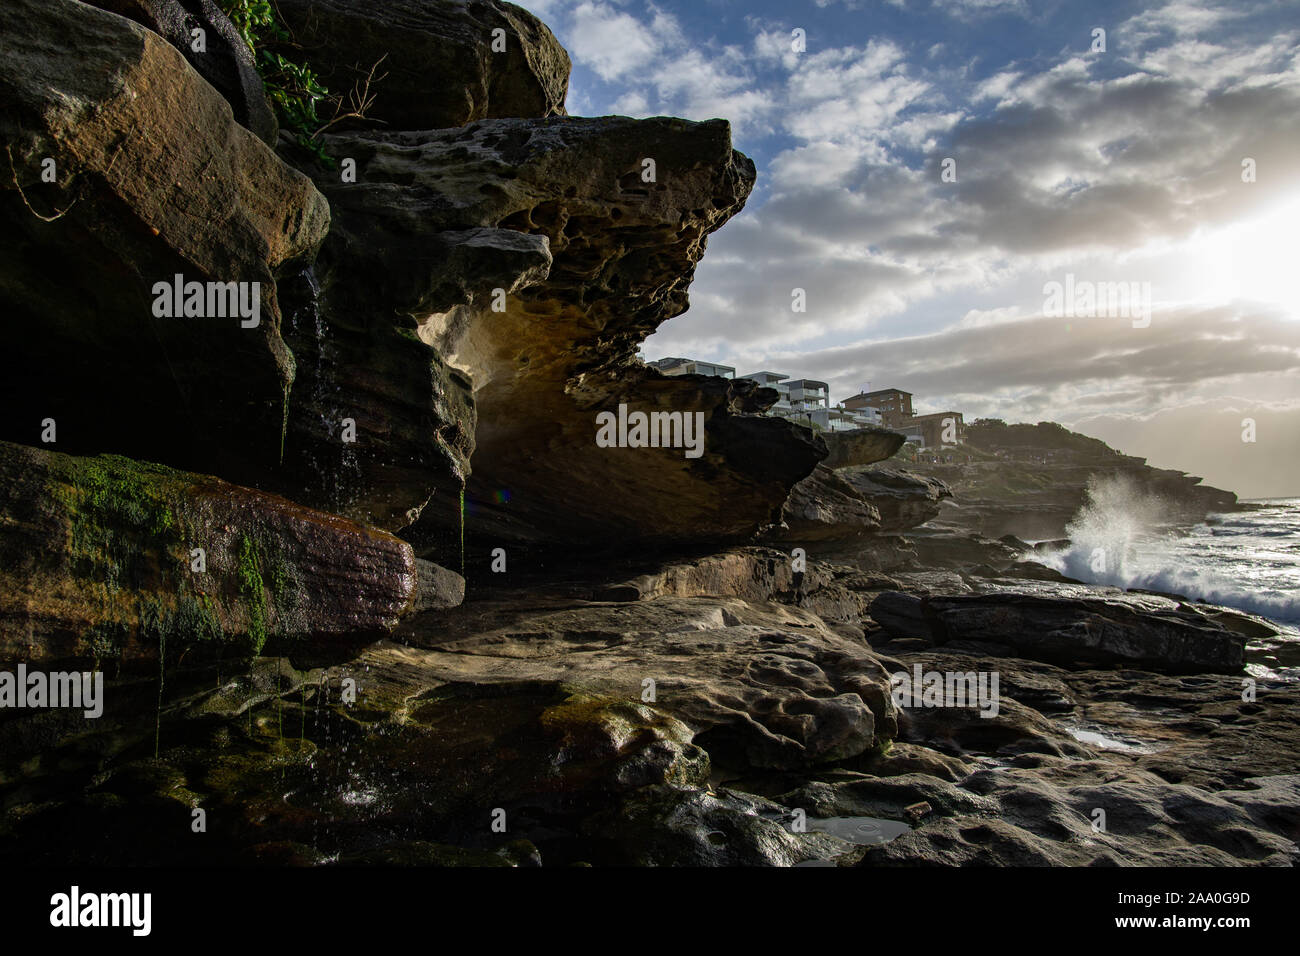 Rocce bagnate dal mare a sunrise, con case in background Foto Stock